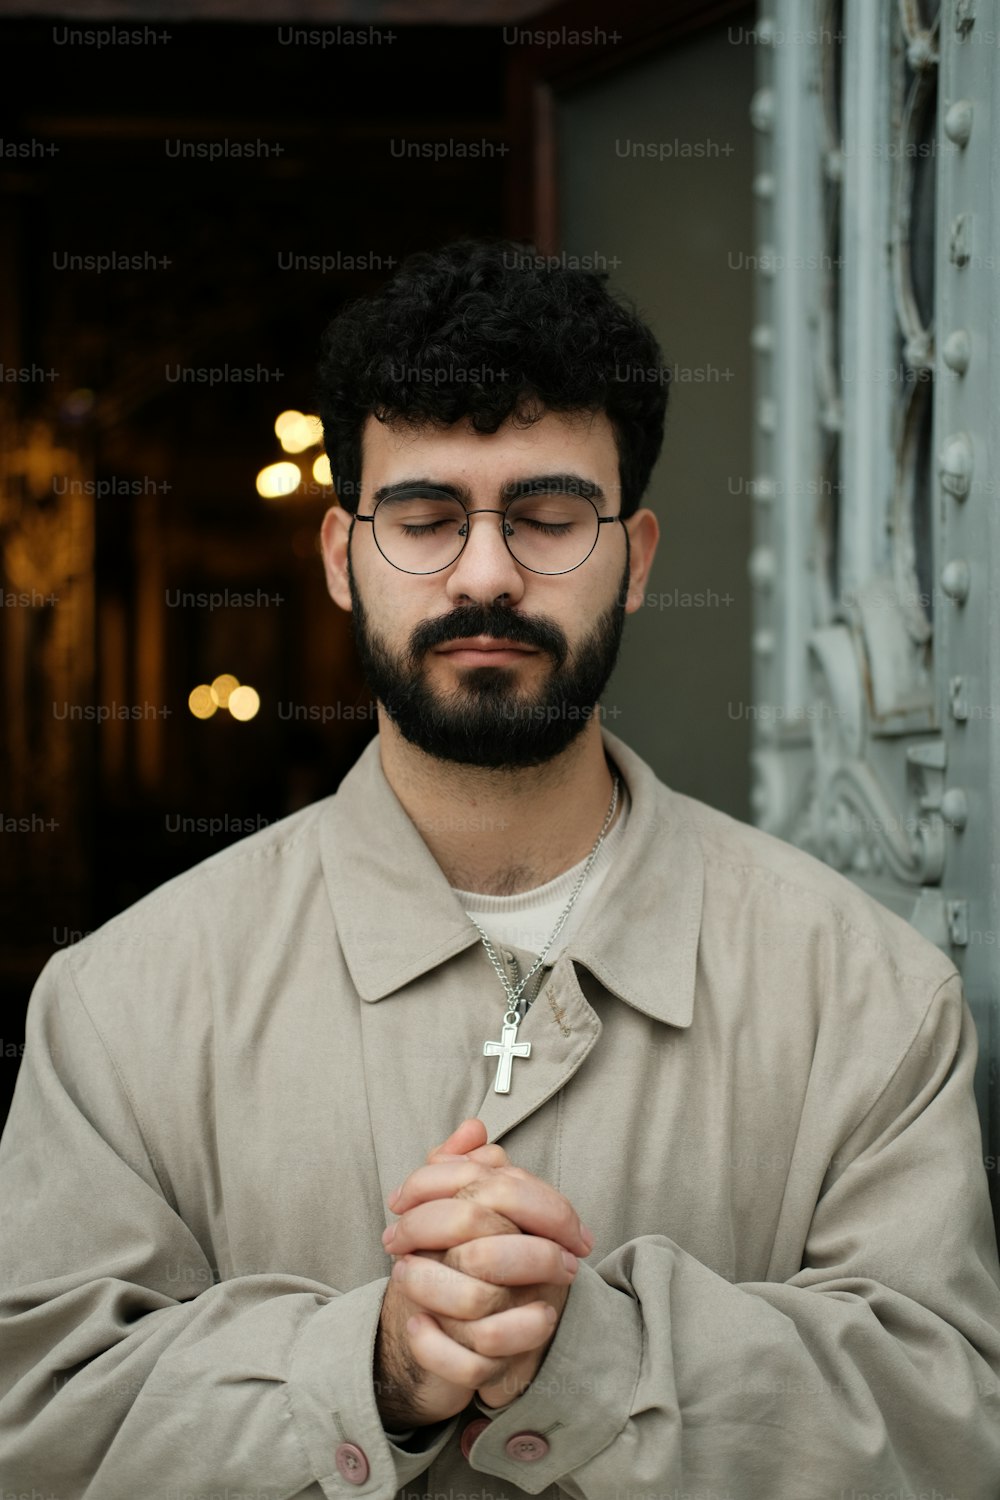 Un uomo con barba e occhiali che reggono una croce